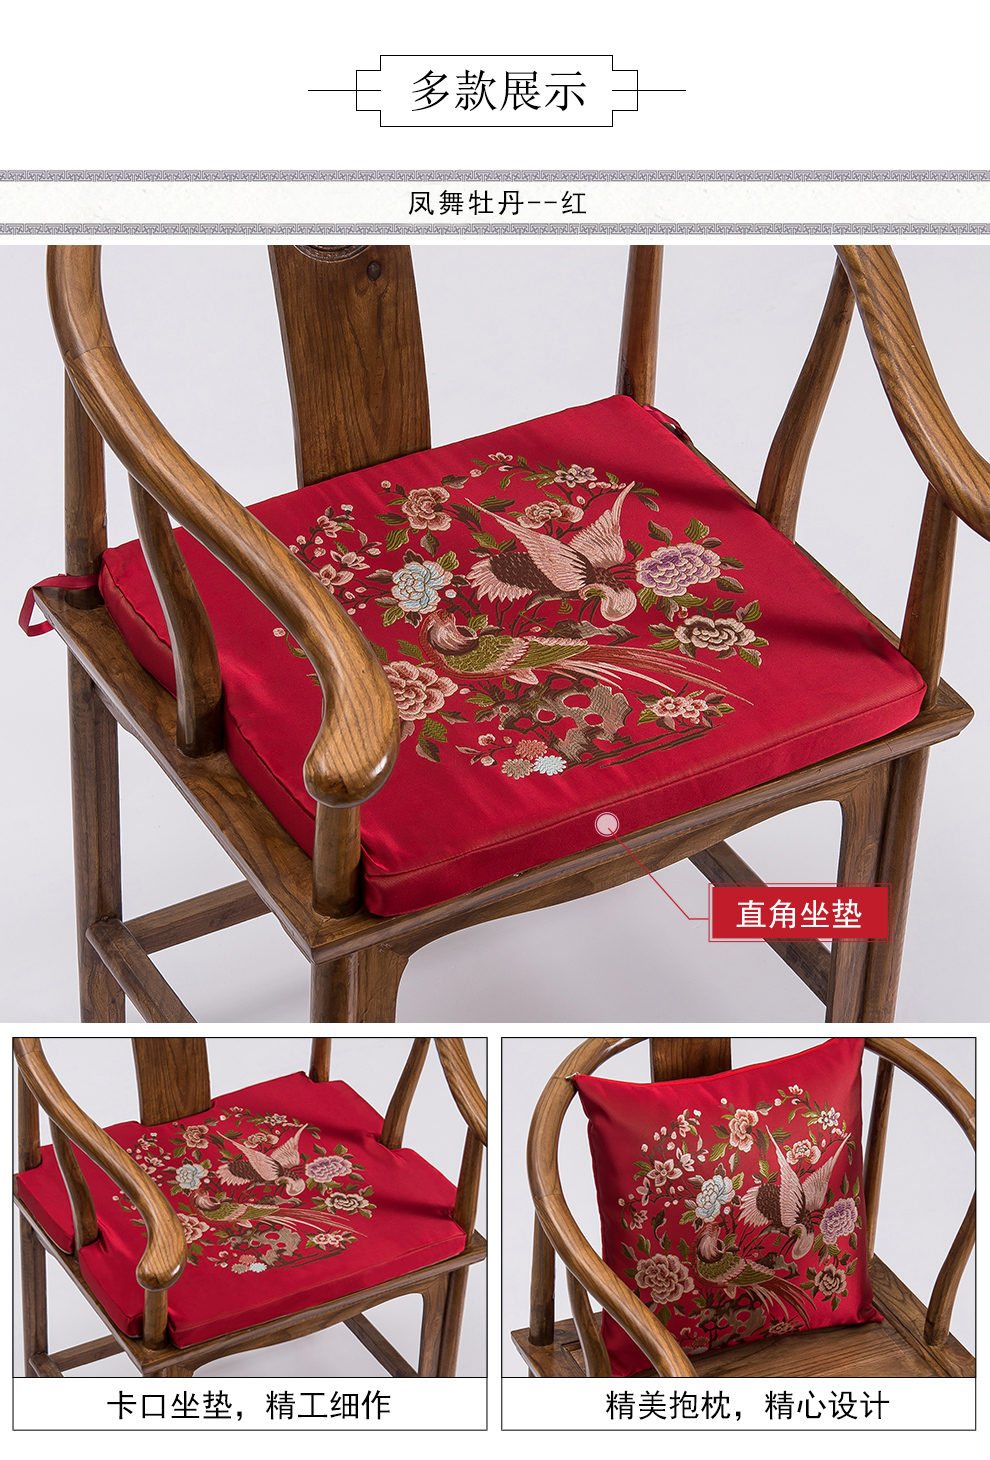 念姿新中式红木沙发坐垫组合家具垫子靠垫靠背太师圈椅实木厚软垫古典